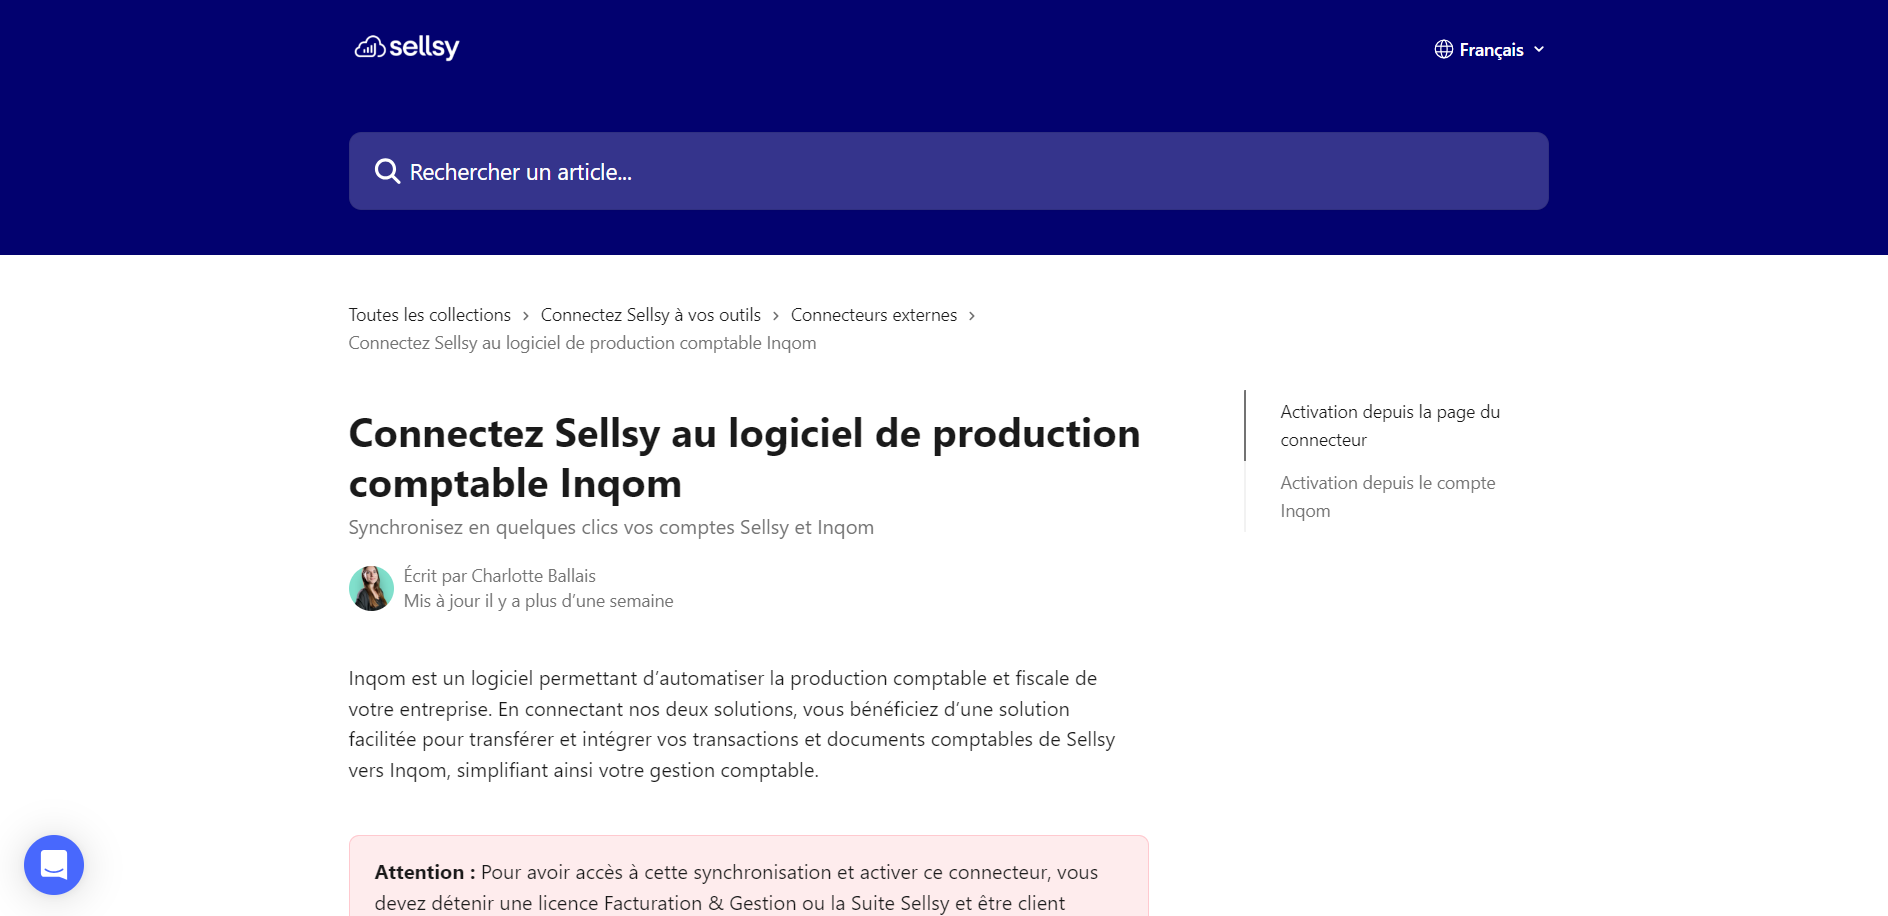 https://help.sellsy.com/fr/articles/8142187-connectez-sellsy-au-logiciel-de-production-comptable-inqom